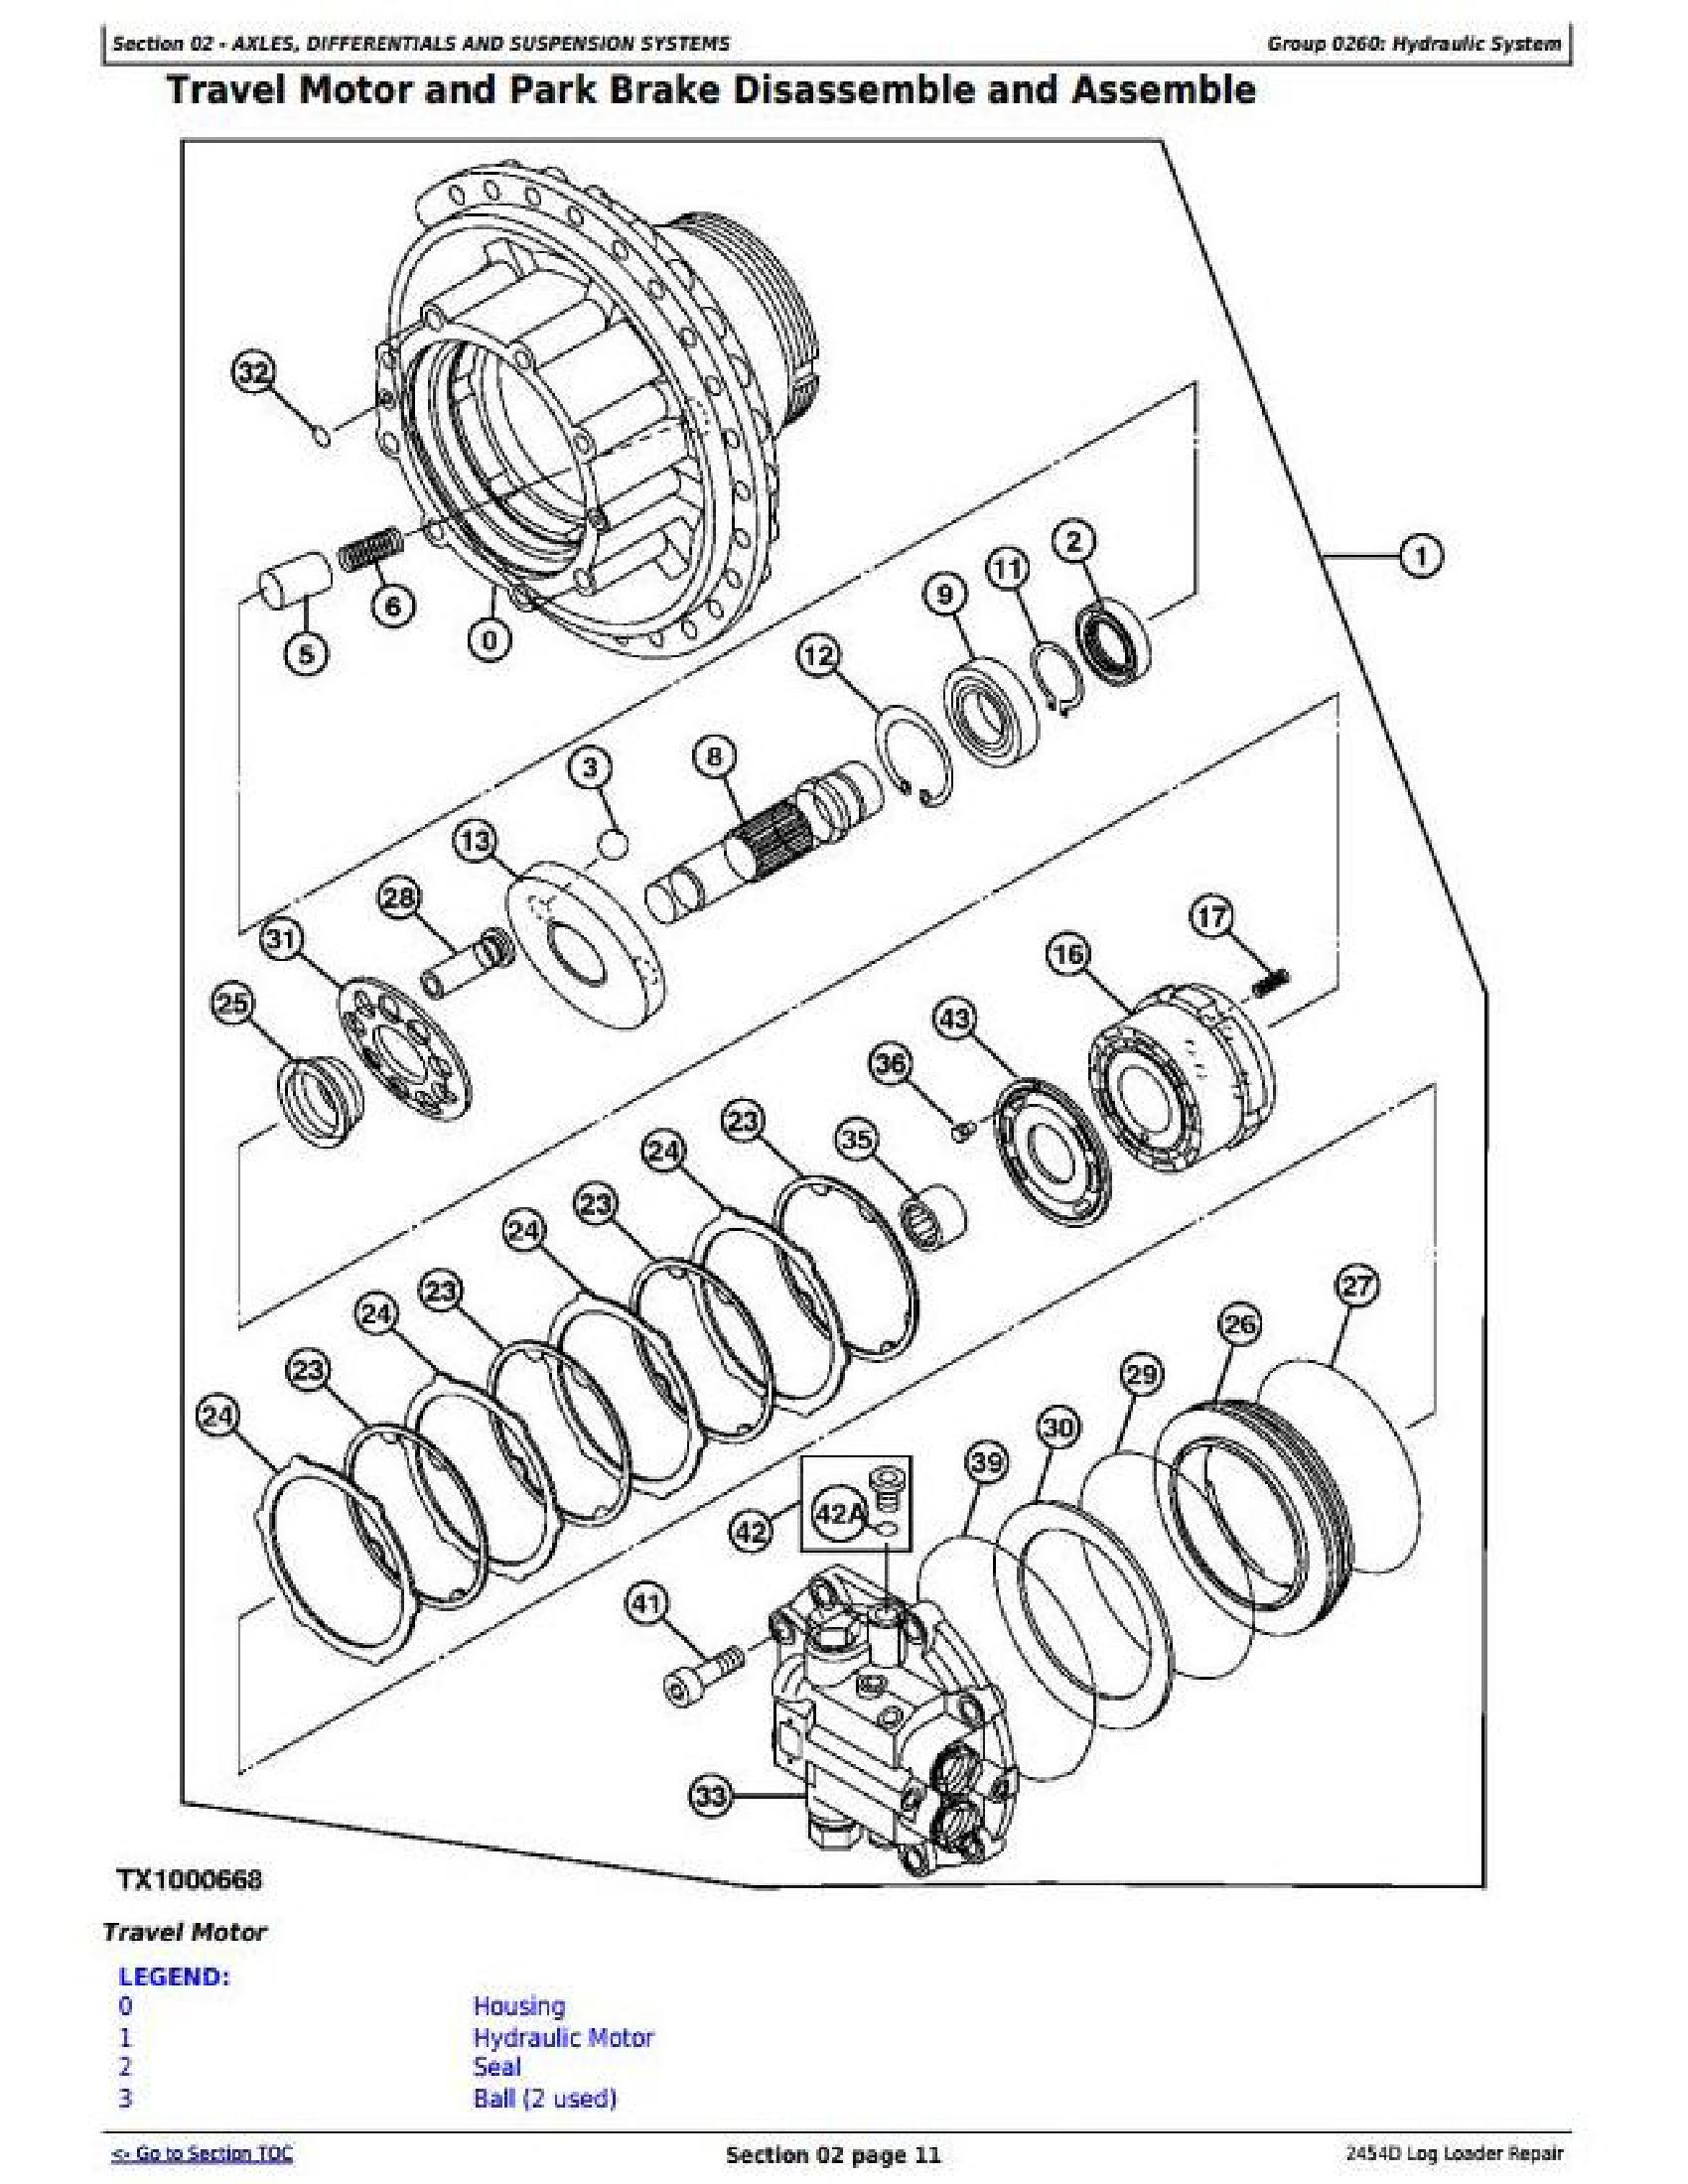 John Deere 1050C manual pdf